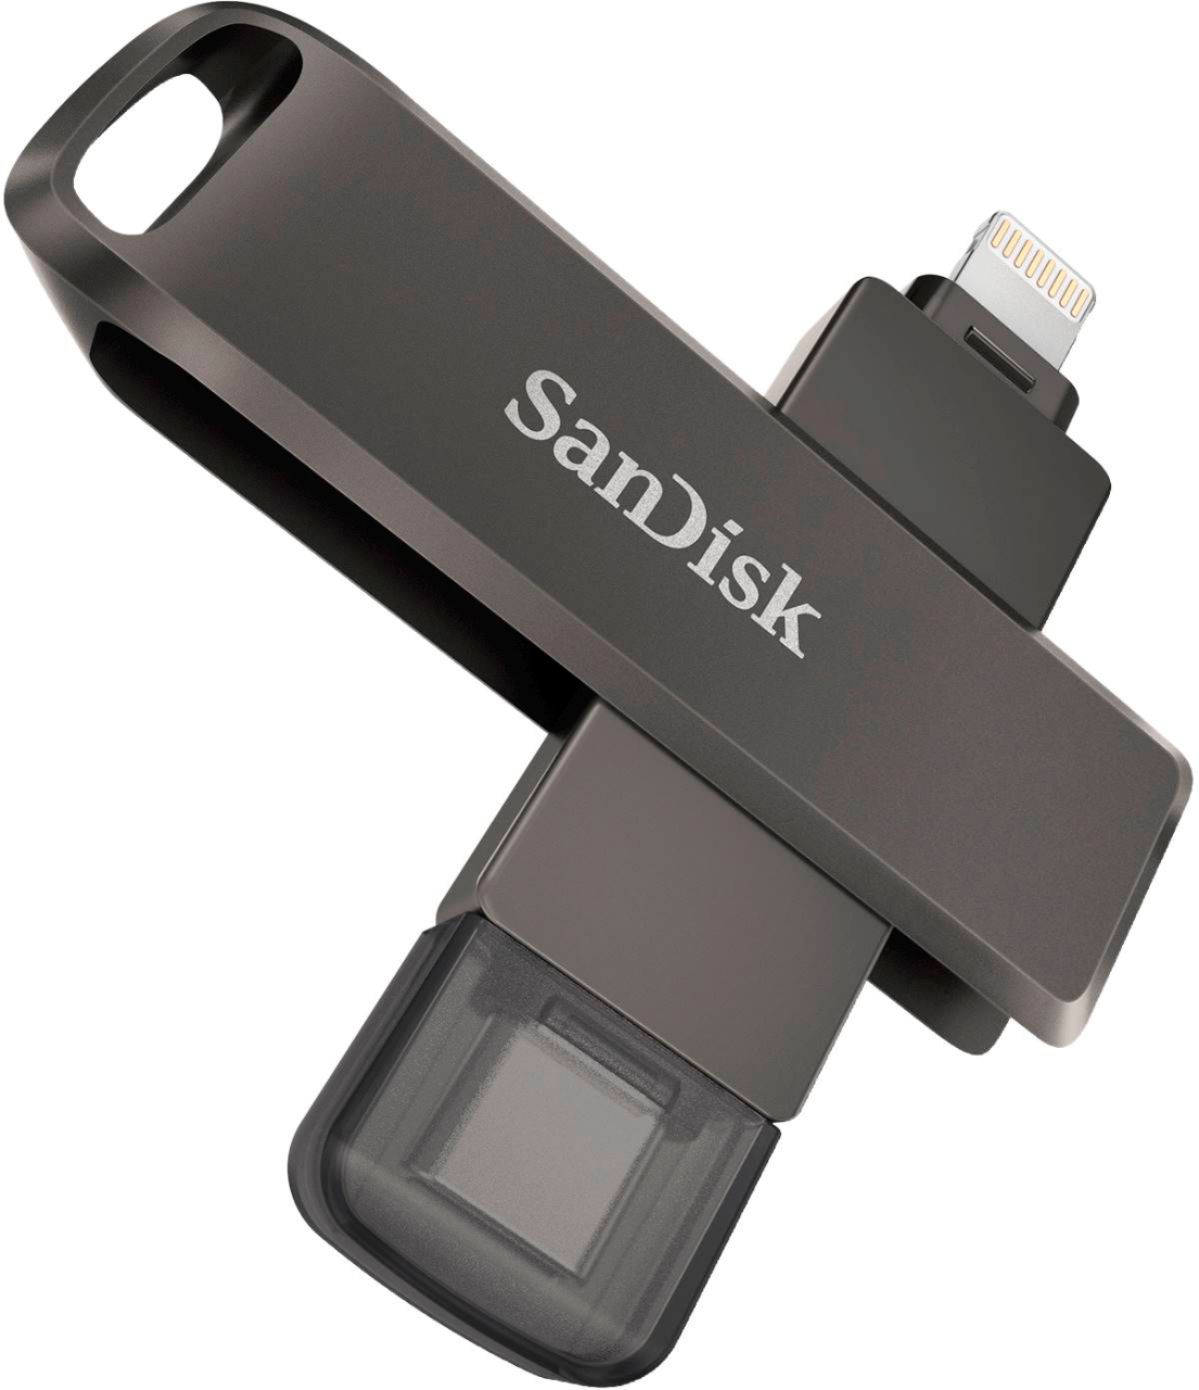 Pendrive 128GB Sandisk - worldnet technology